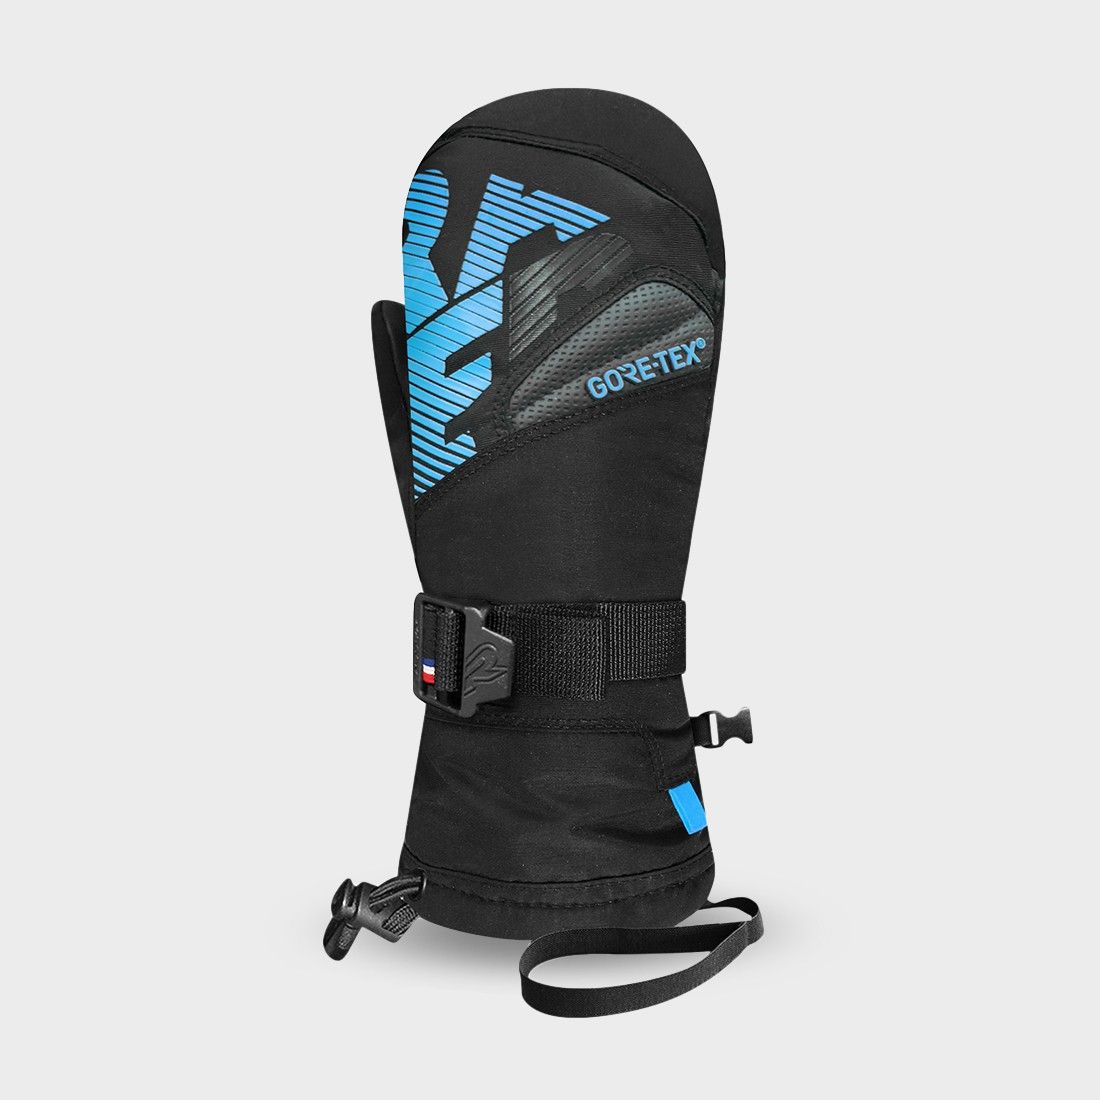 MIGA 3 - スキー手袋